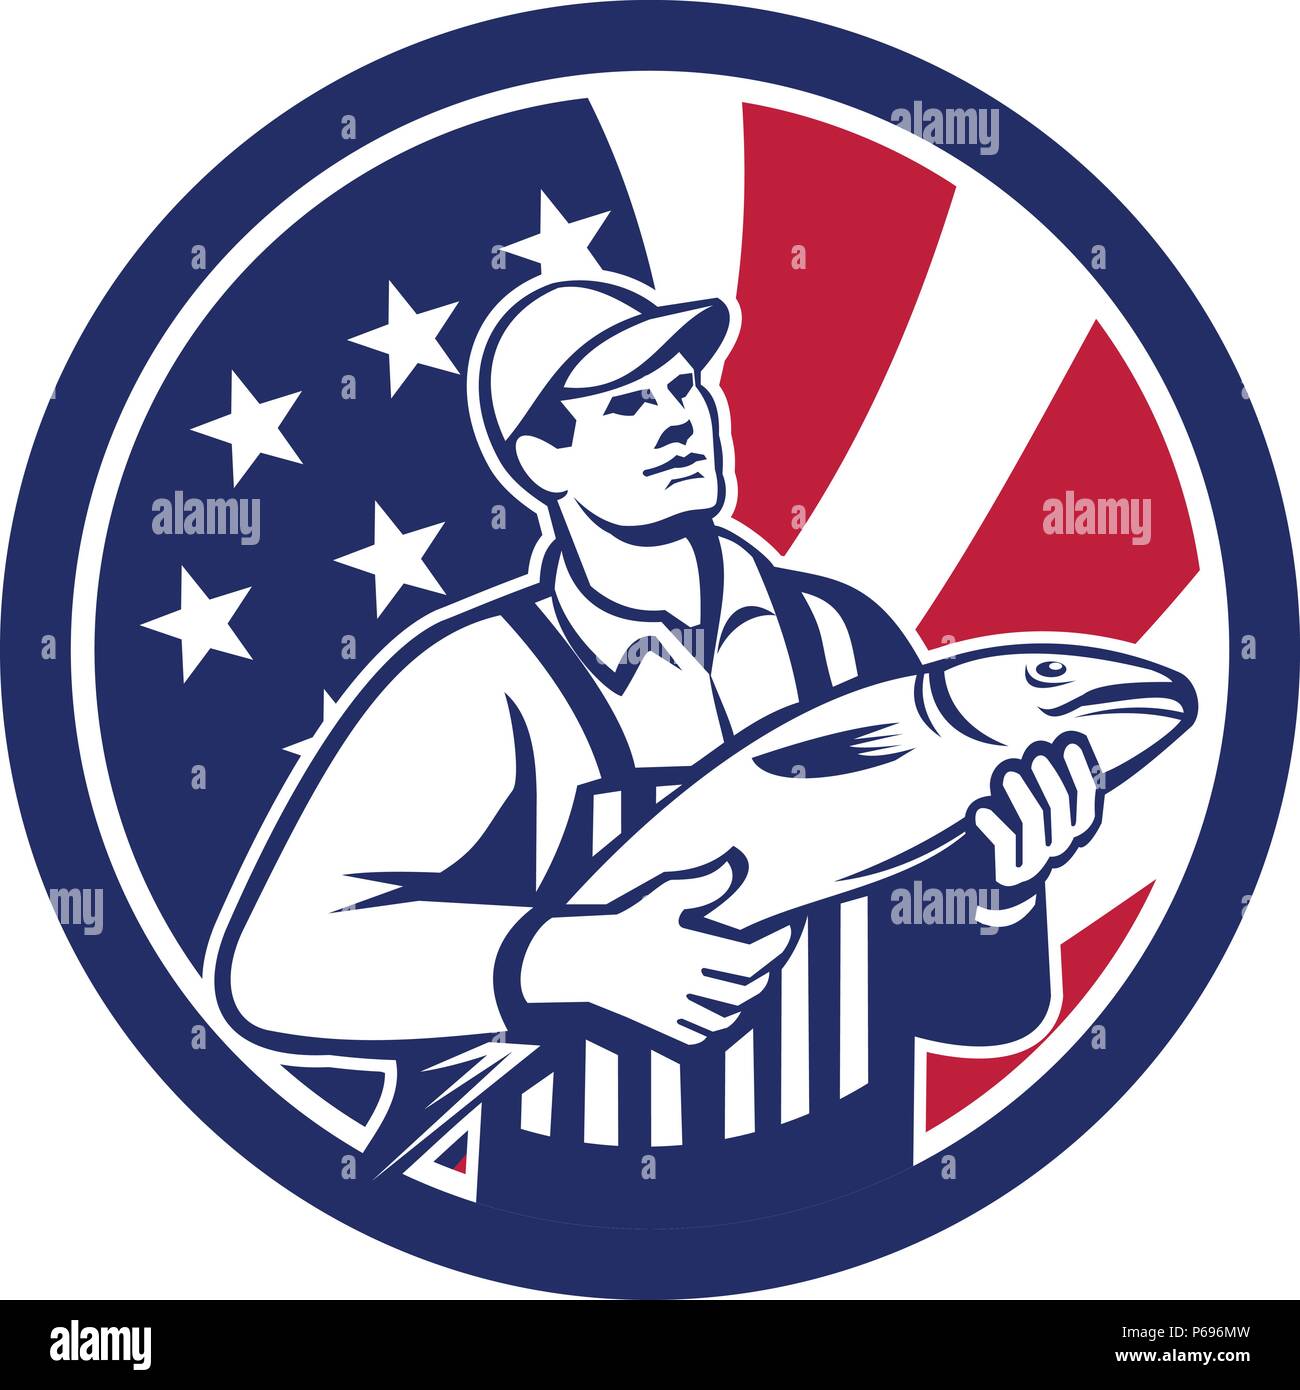 Style rétro icône illustration d'un poissonnier à la vente du poisson avec United States of America USA Star Spangled Banner ou stars and stripes flag Illustration de Vecteur